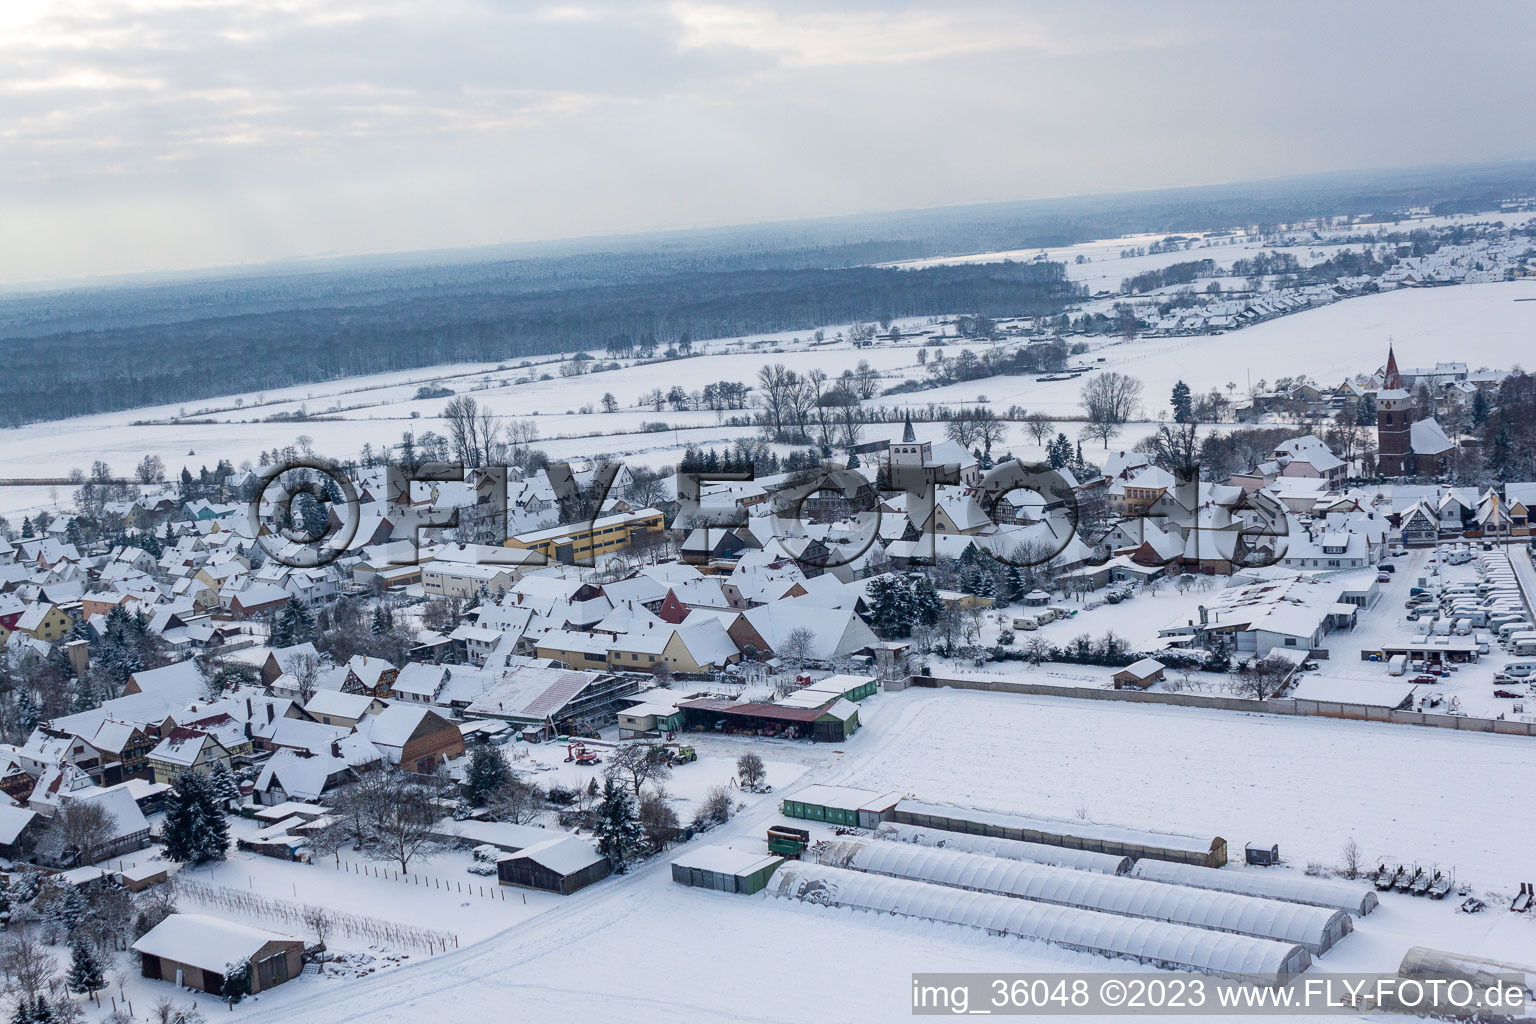 Minfeld dans le département Rhénanie-Palatinat, Allemagne vue du ciel